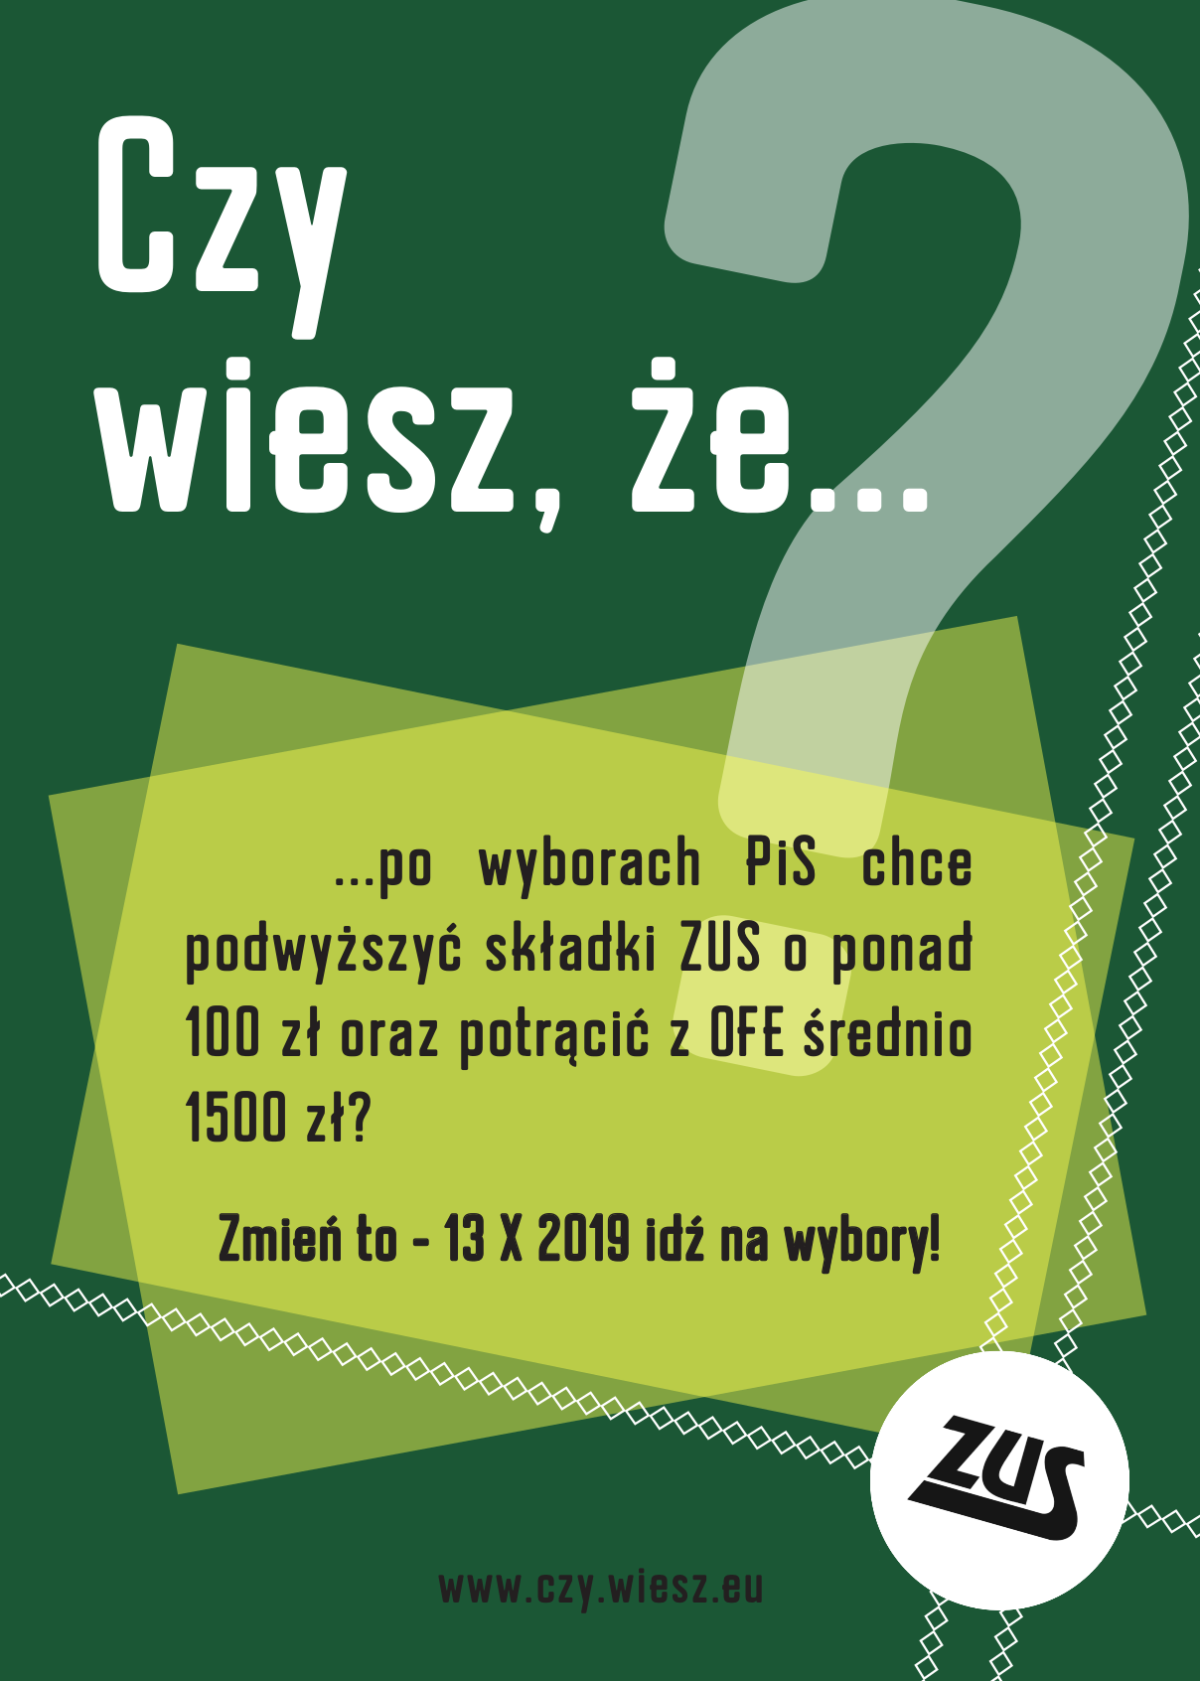 Czy wiesz, że po wyborach PiS chce podwyższyć składki ZUS o ponad 100 zł oraz potrącić z OFE średnio 1500 zł ?